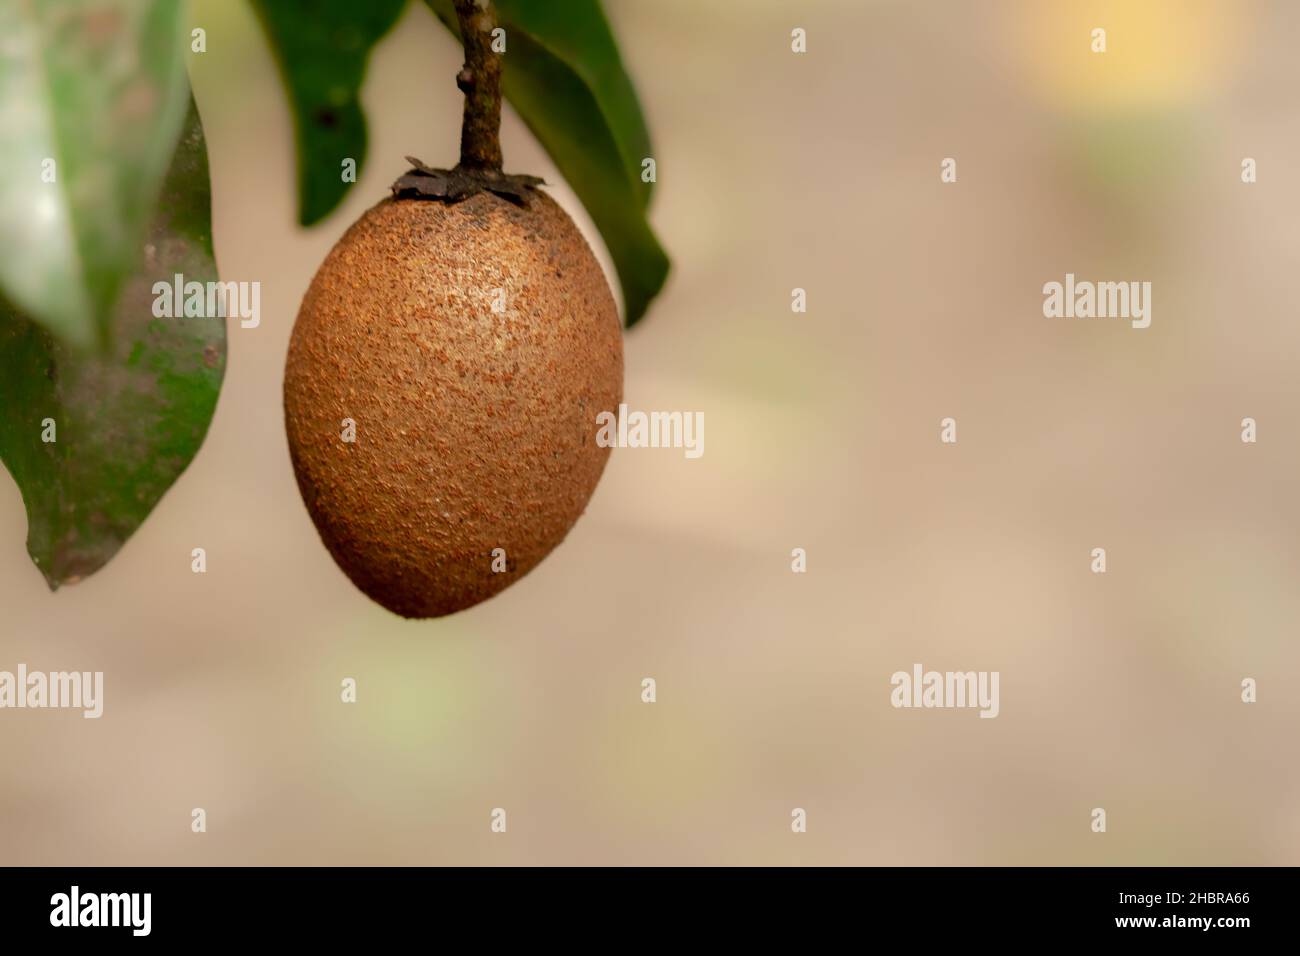 Sapodilla marrone frutta appesa all'albero, lo sfondo delle foglie verdi è sfocato Foto Stock